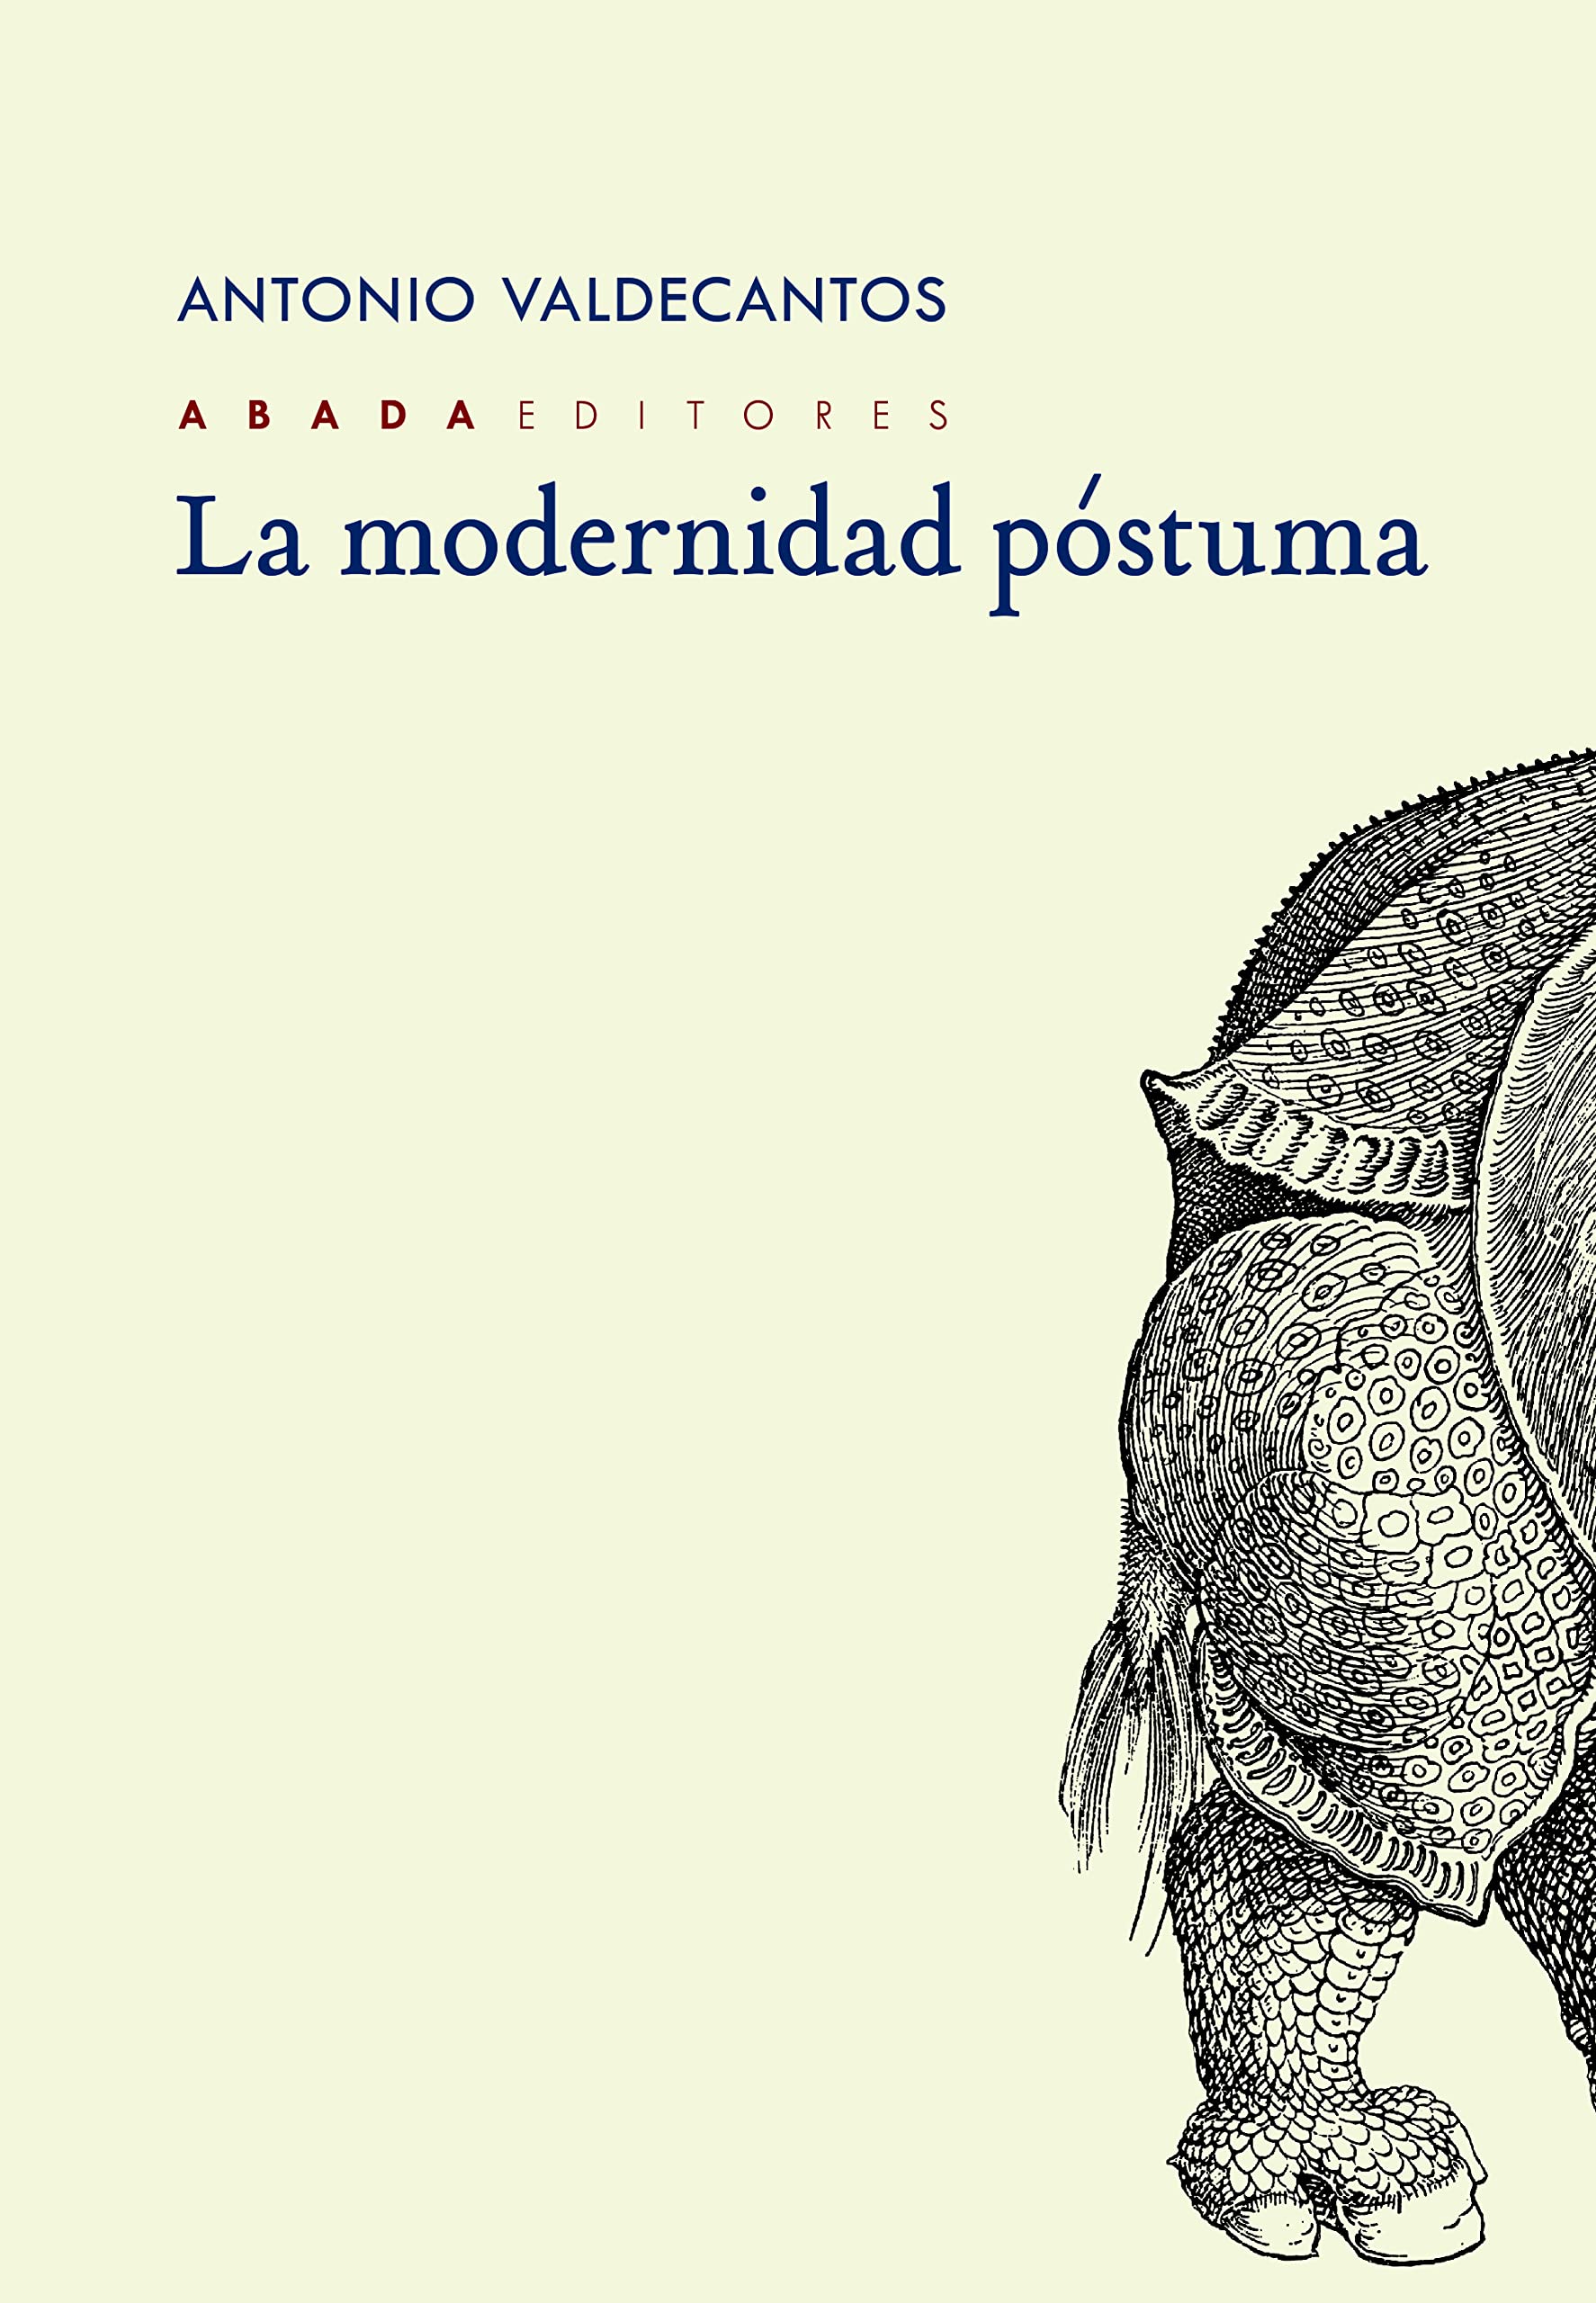 Zenda recomienda: La modernidad póstuma, de Antonio Valdecantos